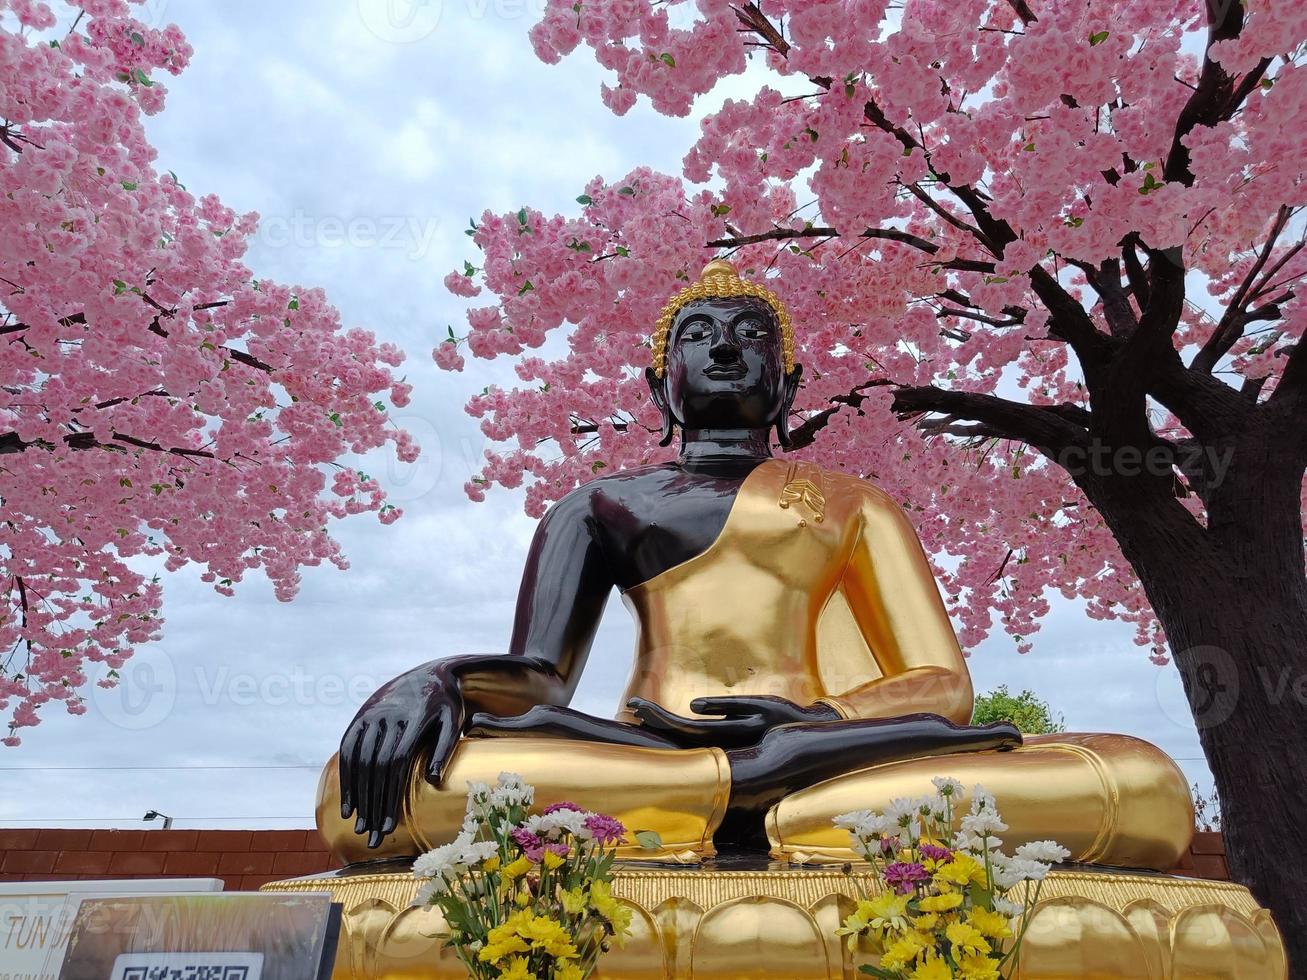 estátua de Buda em textura dourada e preta sob o céu de fundo de folha rosa foto